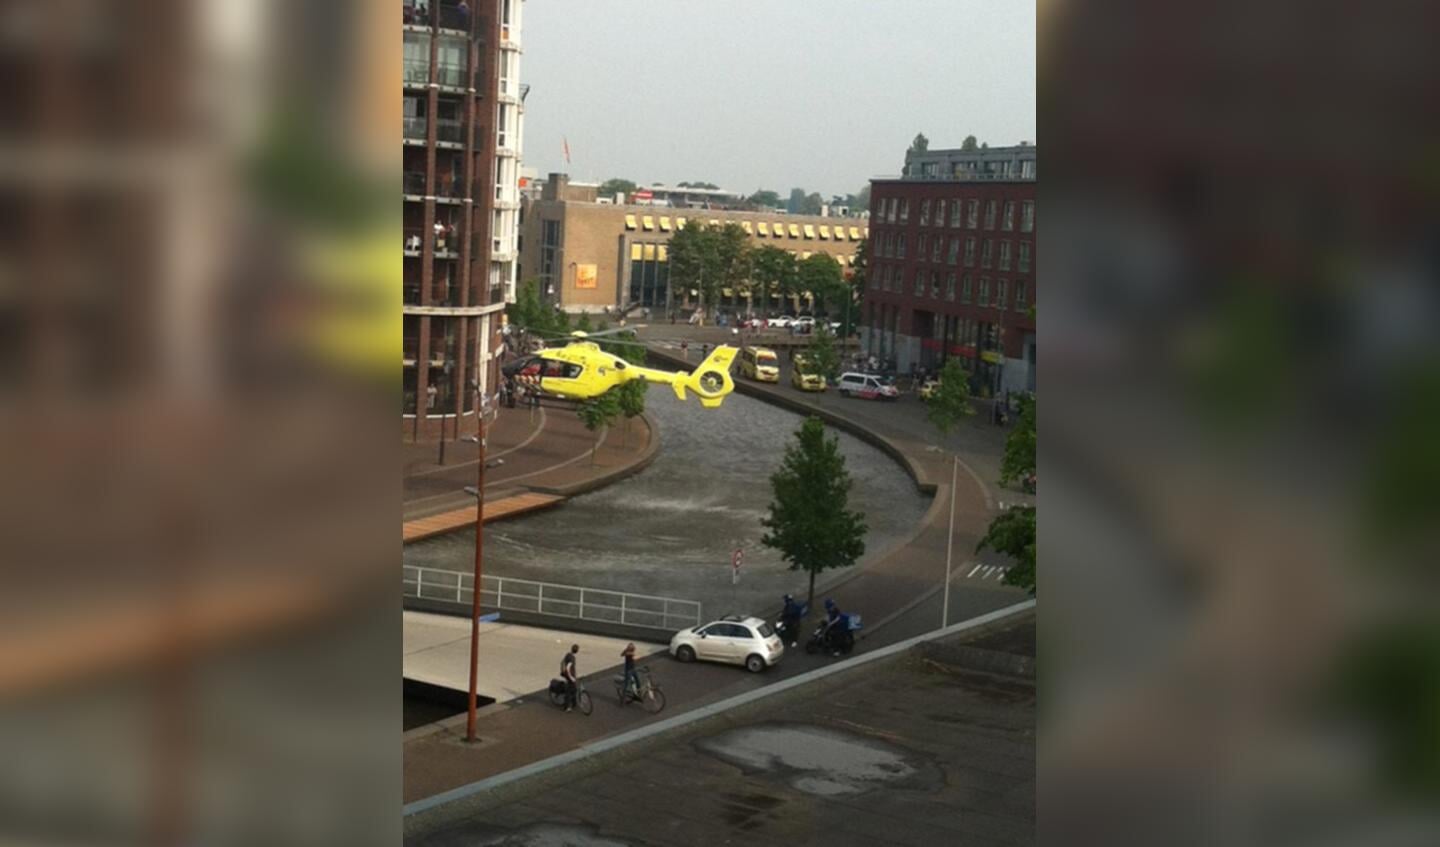 De traumahelikopter landde op de Nieuweweg vanwege het ongeval op de Markendaalseweg. foto Denise Neggers